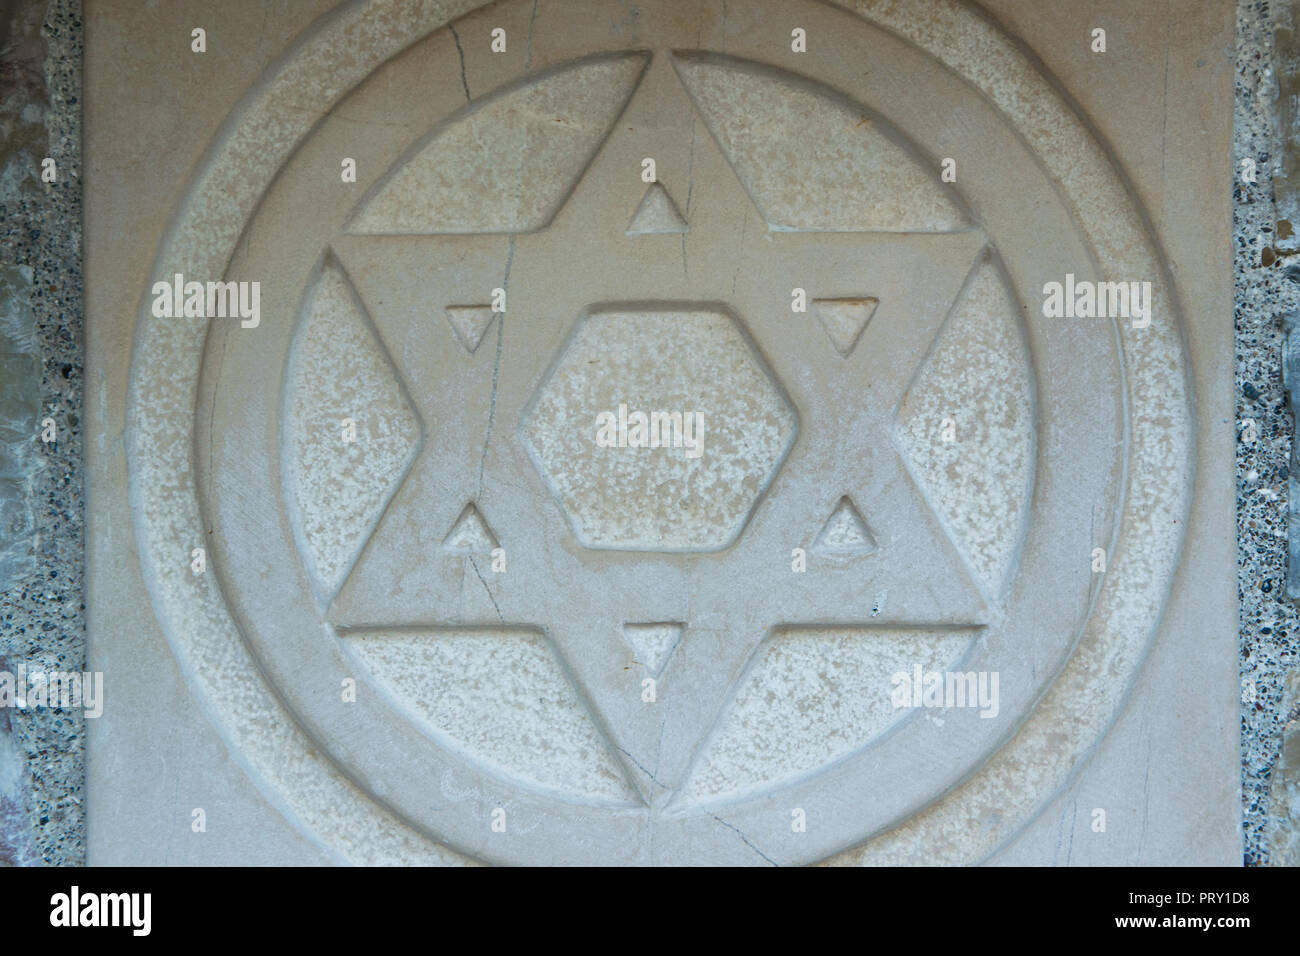 Der Davidstern eingraviert in den Marmor - traditionelles Symbol für moderne jüdische Identität und Judentum Stockfoto